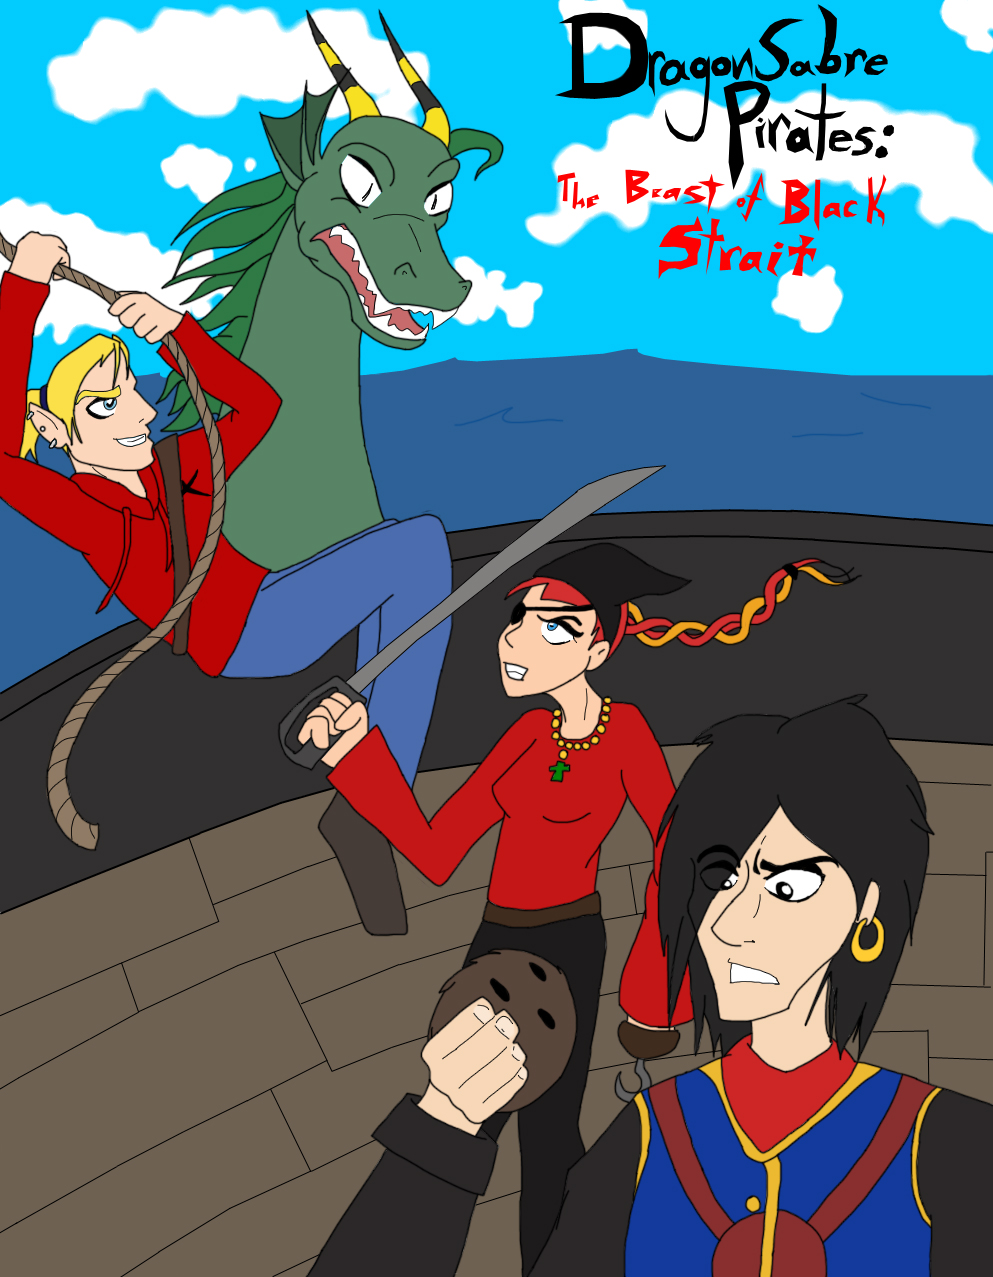 Dragon Sabre Pirates by FirePhantom24